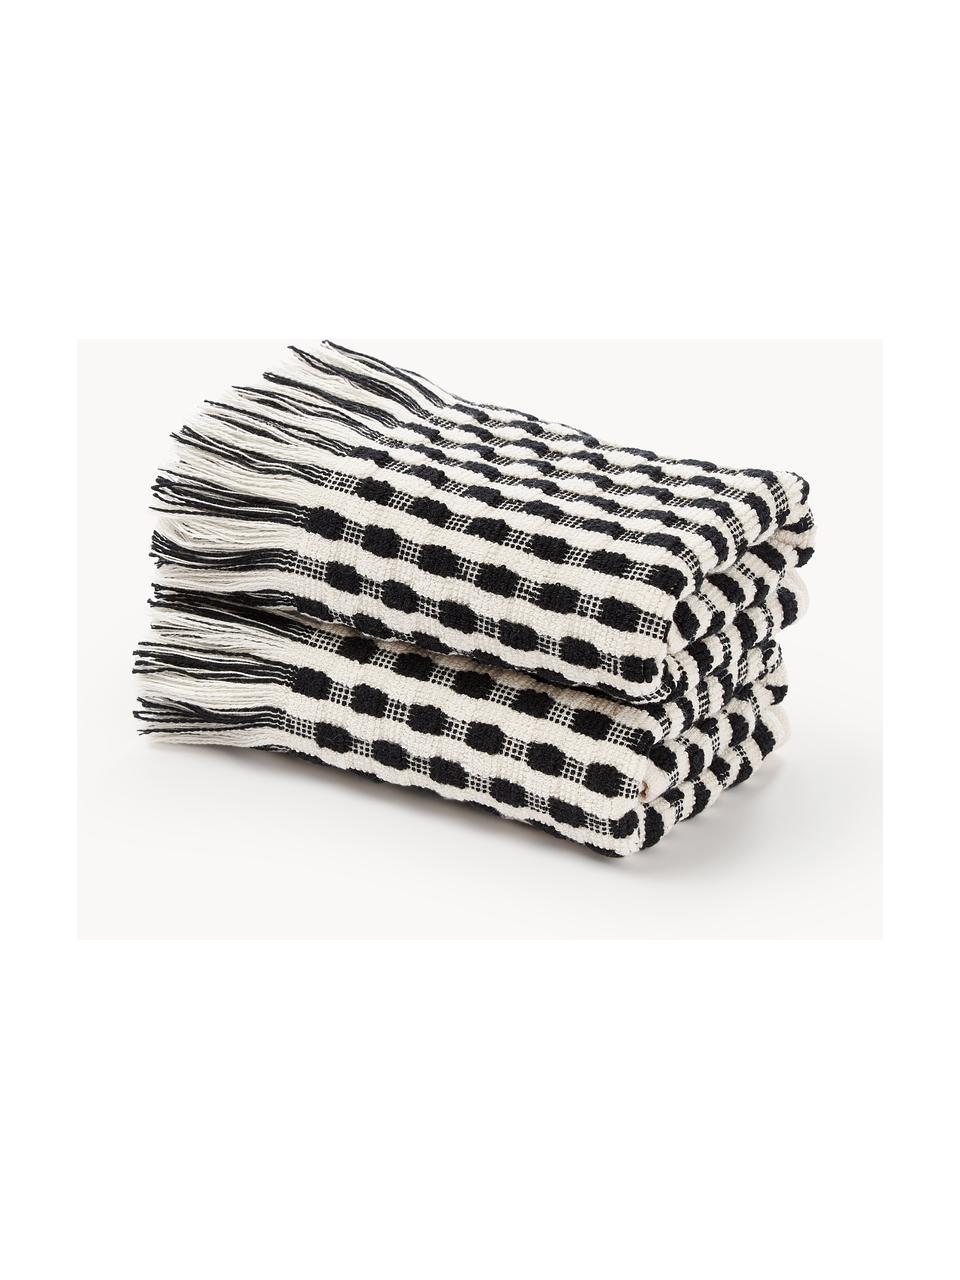 Handdoek Juniper met hoog-laag structuur, in verschillende formaten, Gebroken wit, zwart, Gastendoekje, B 30 x L 50 cm, 2 stuks